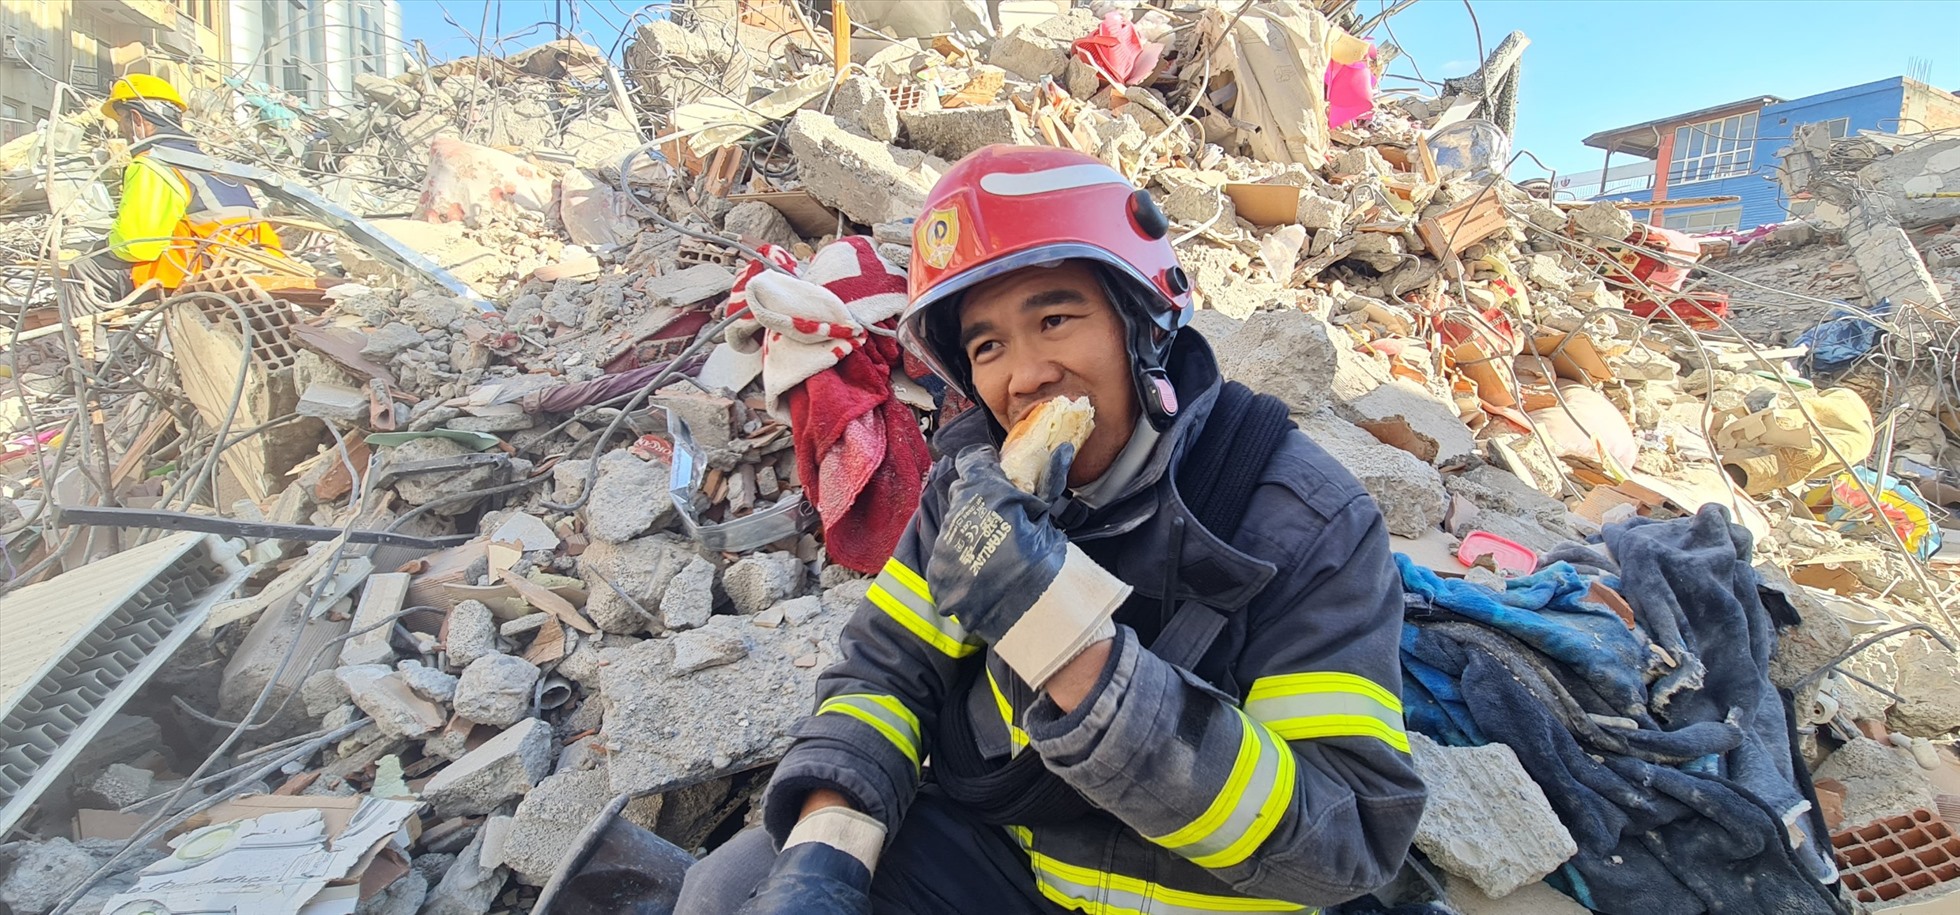 Công an Việt Nam ăn vội bánh mì tại hiện trường toà nhà đổ nát. Ảnh: Cục Cảnh sát PCCC&CNCH